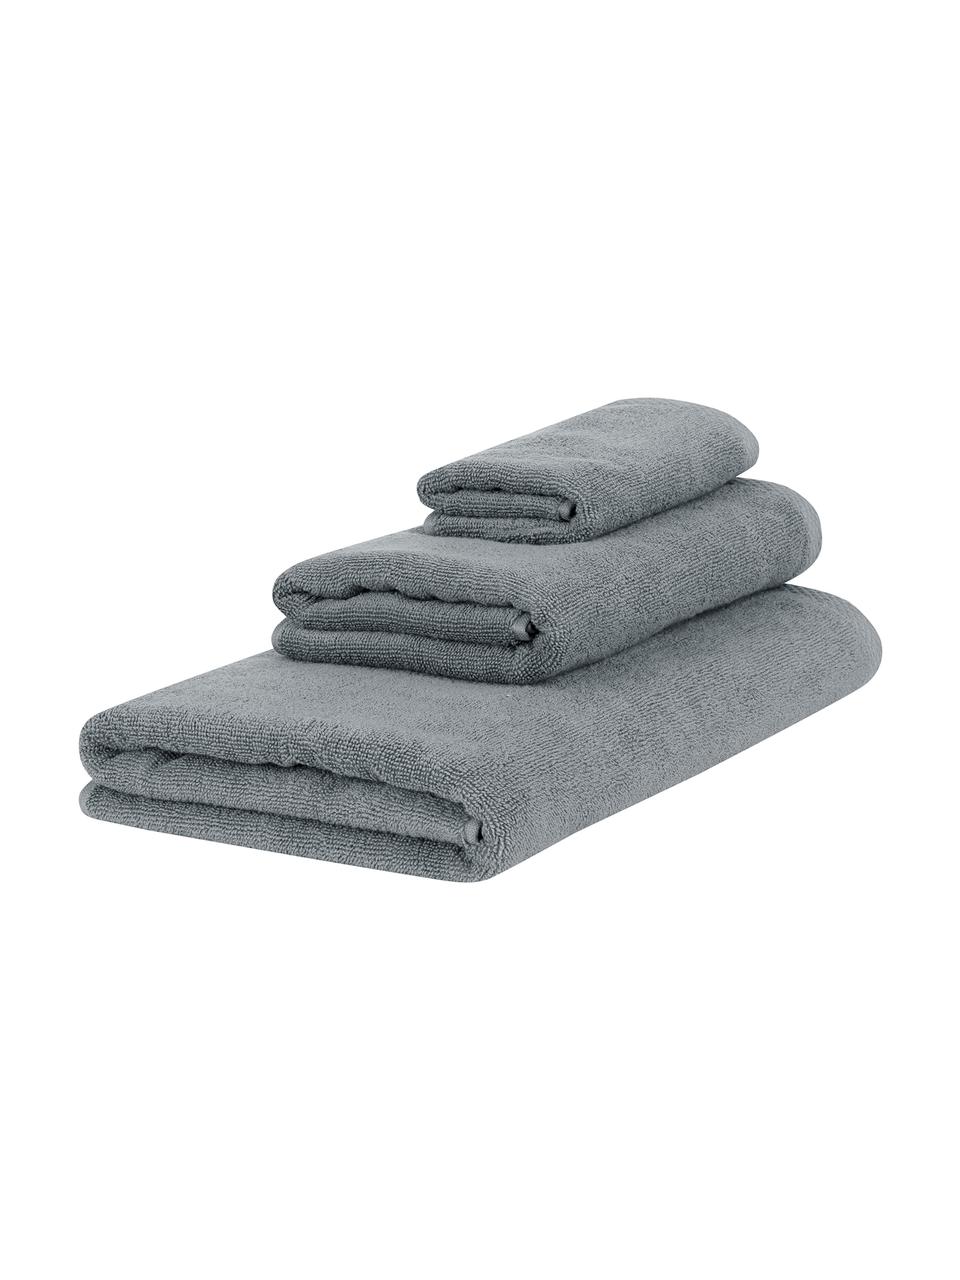 Eenkleurige handdoekenset Comfort, 3-delig, Donkergrijs, Set met verschillende formaten